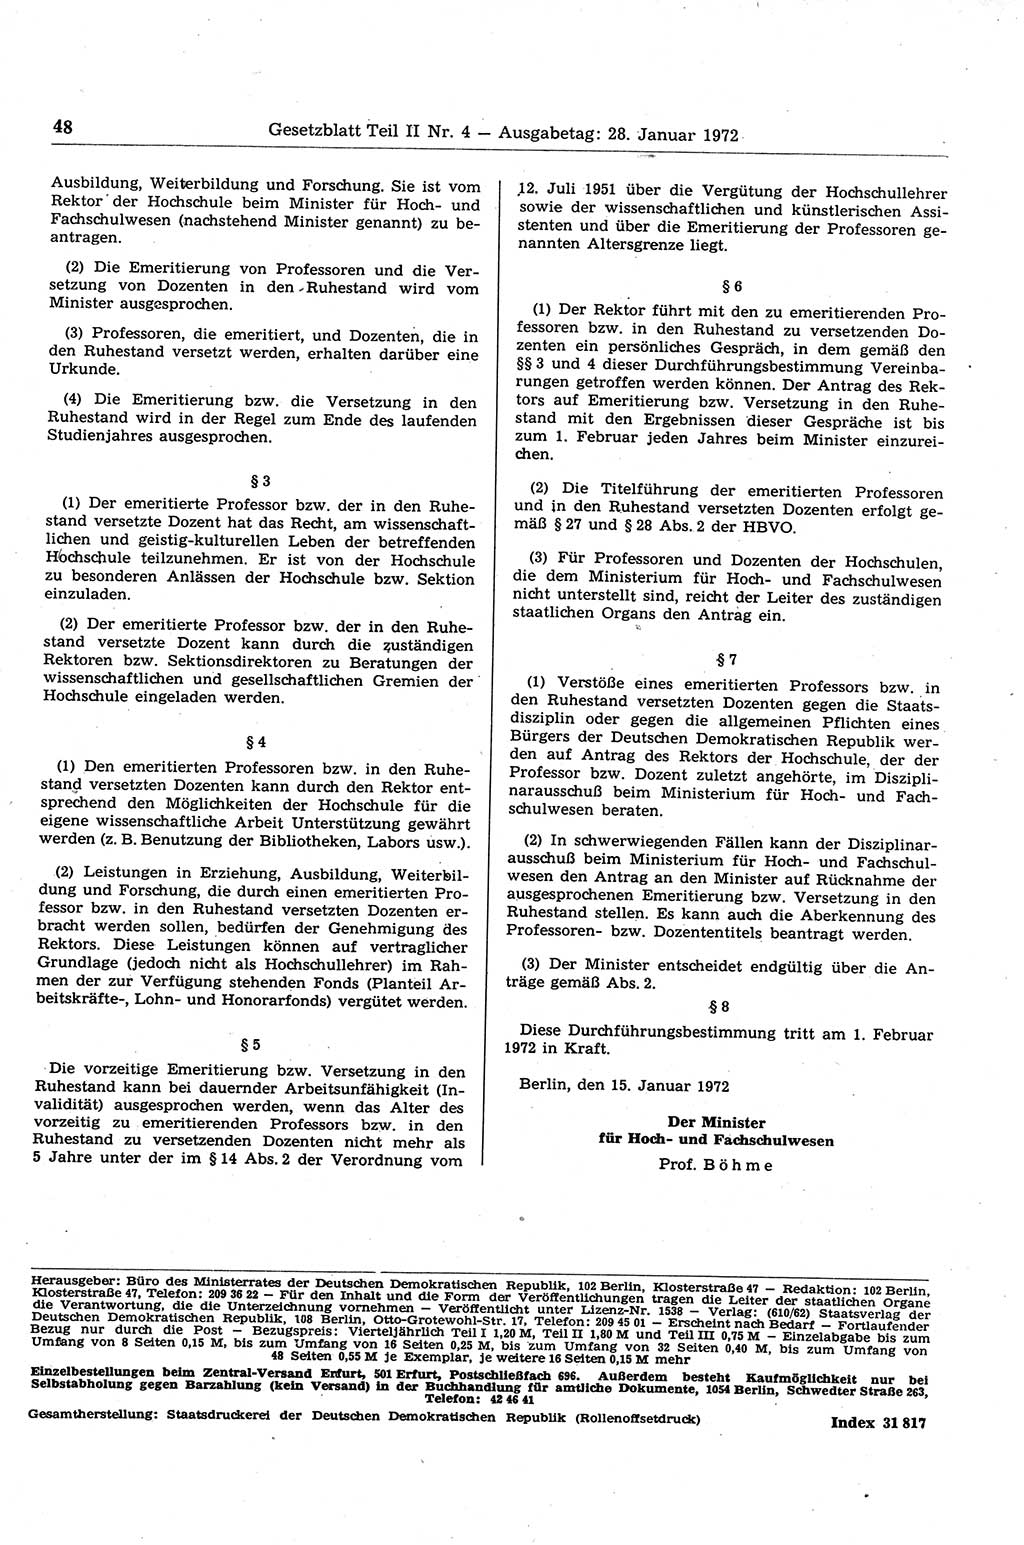 Gesetzblatt (GBl.) der Deutschen Demokratischen Republik (DDR) Teil ⅠⅠ 1972, Seite 48 (GBl. DDR ⅠⅠ 1972, S. 48)